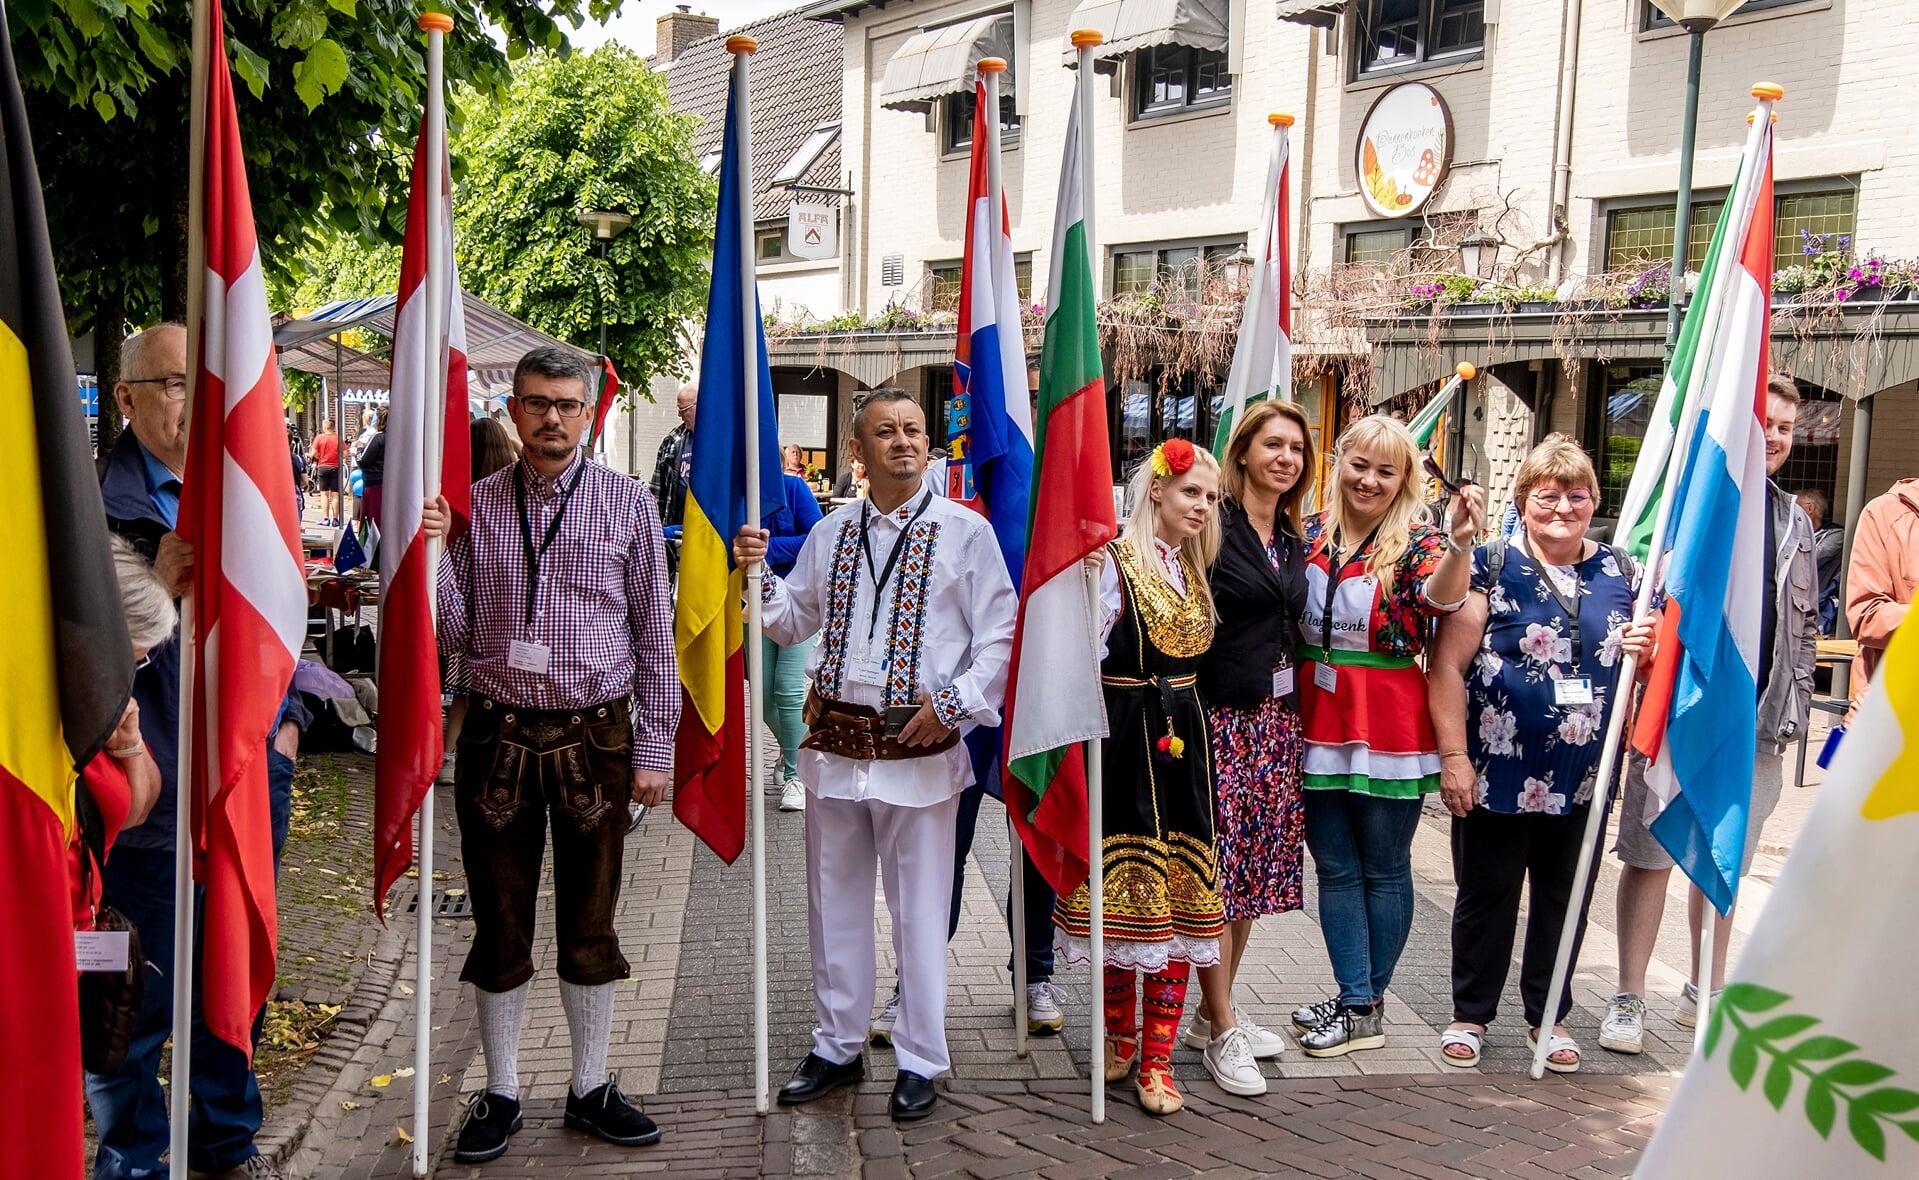 De vlaggen van de elf EU-landen die in Esch te gast zijn werden feestelijk gepresenteerd tijdens het Bierpompfeest op Hemelvaartsdag.